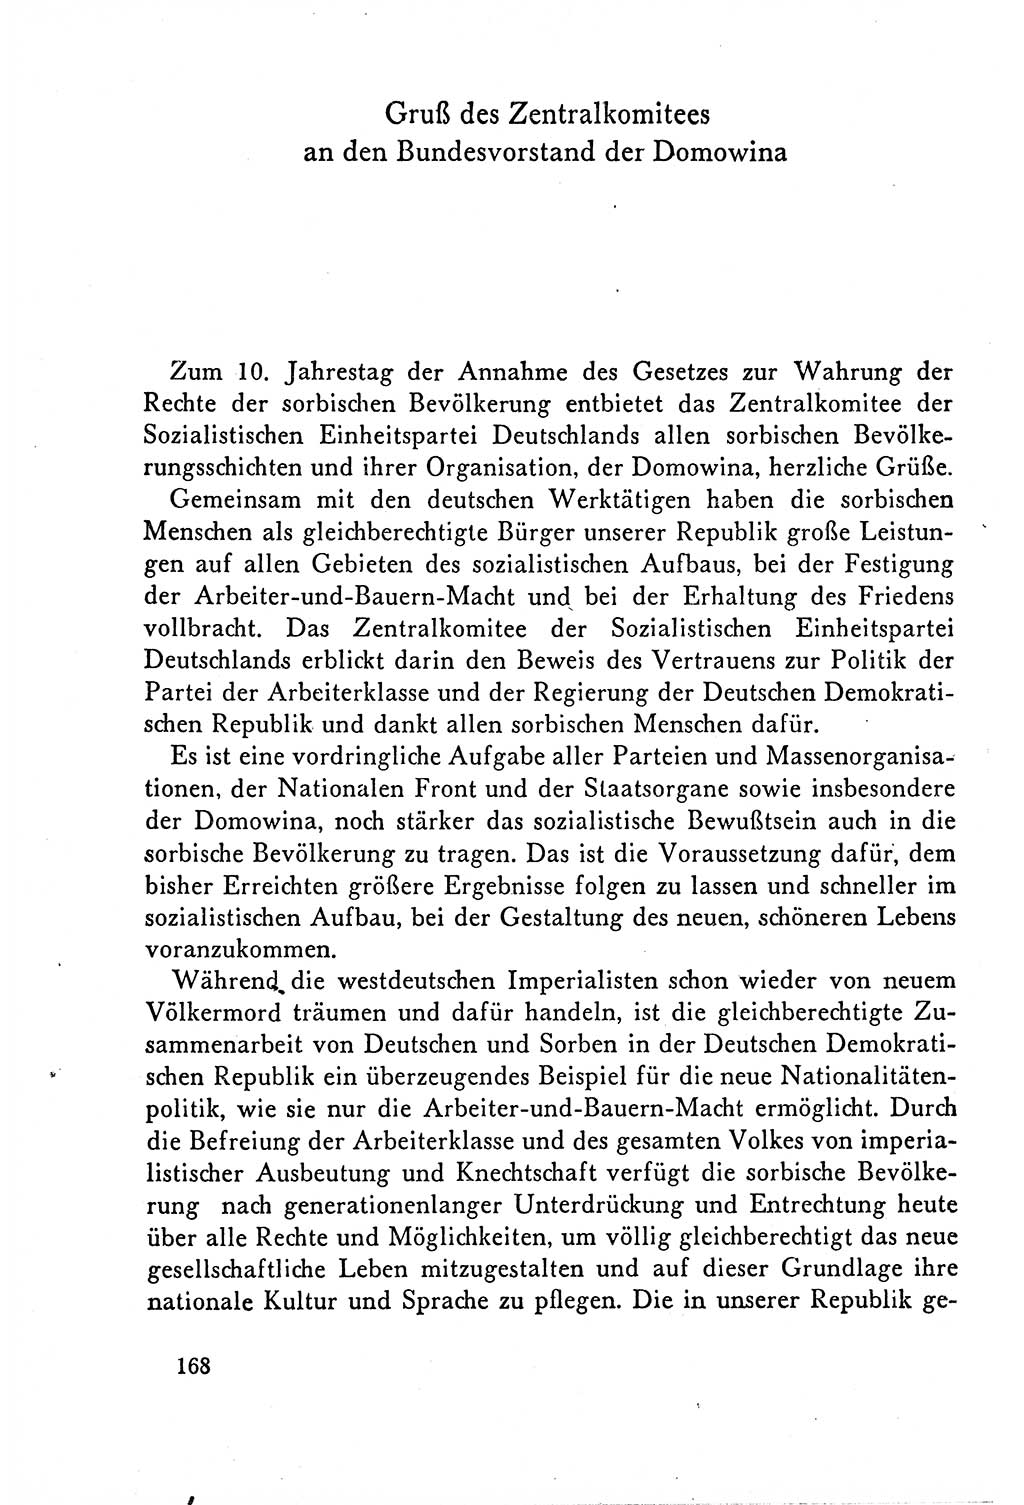 Dokumente der Sozialistischen Einheitspartei Deutschlands (SED) [Deutsche Demokratische Republik (DDR)] 1958-1959, Seite 168 (Dok. SED DDR 1958-1959, S. 168)